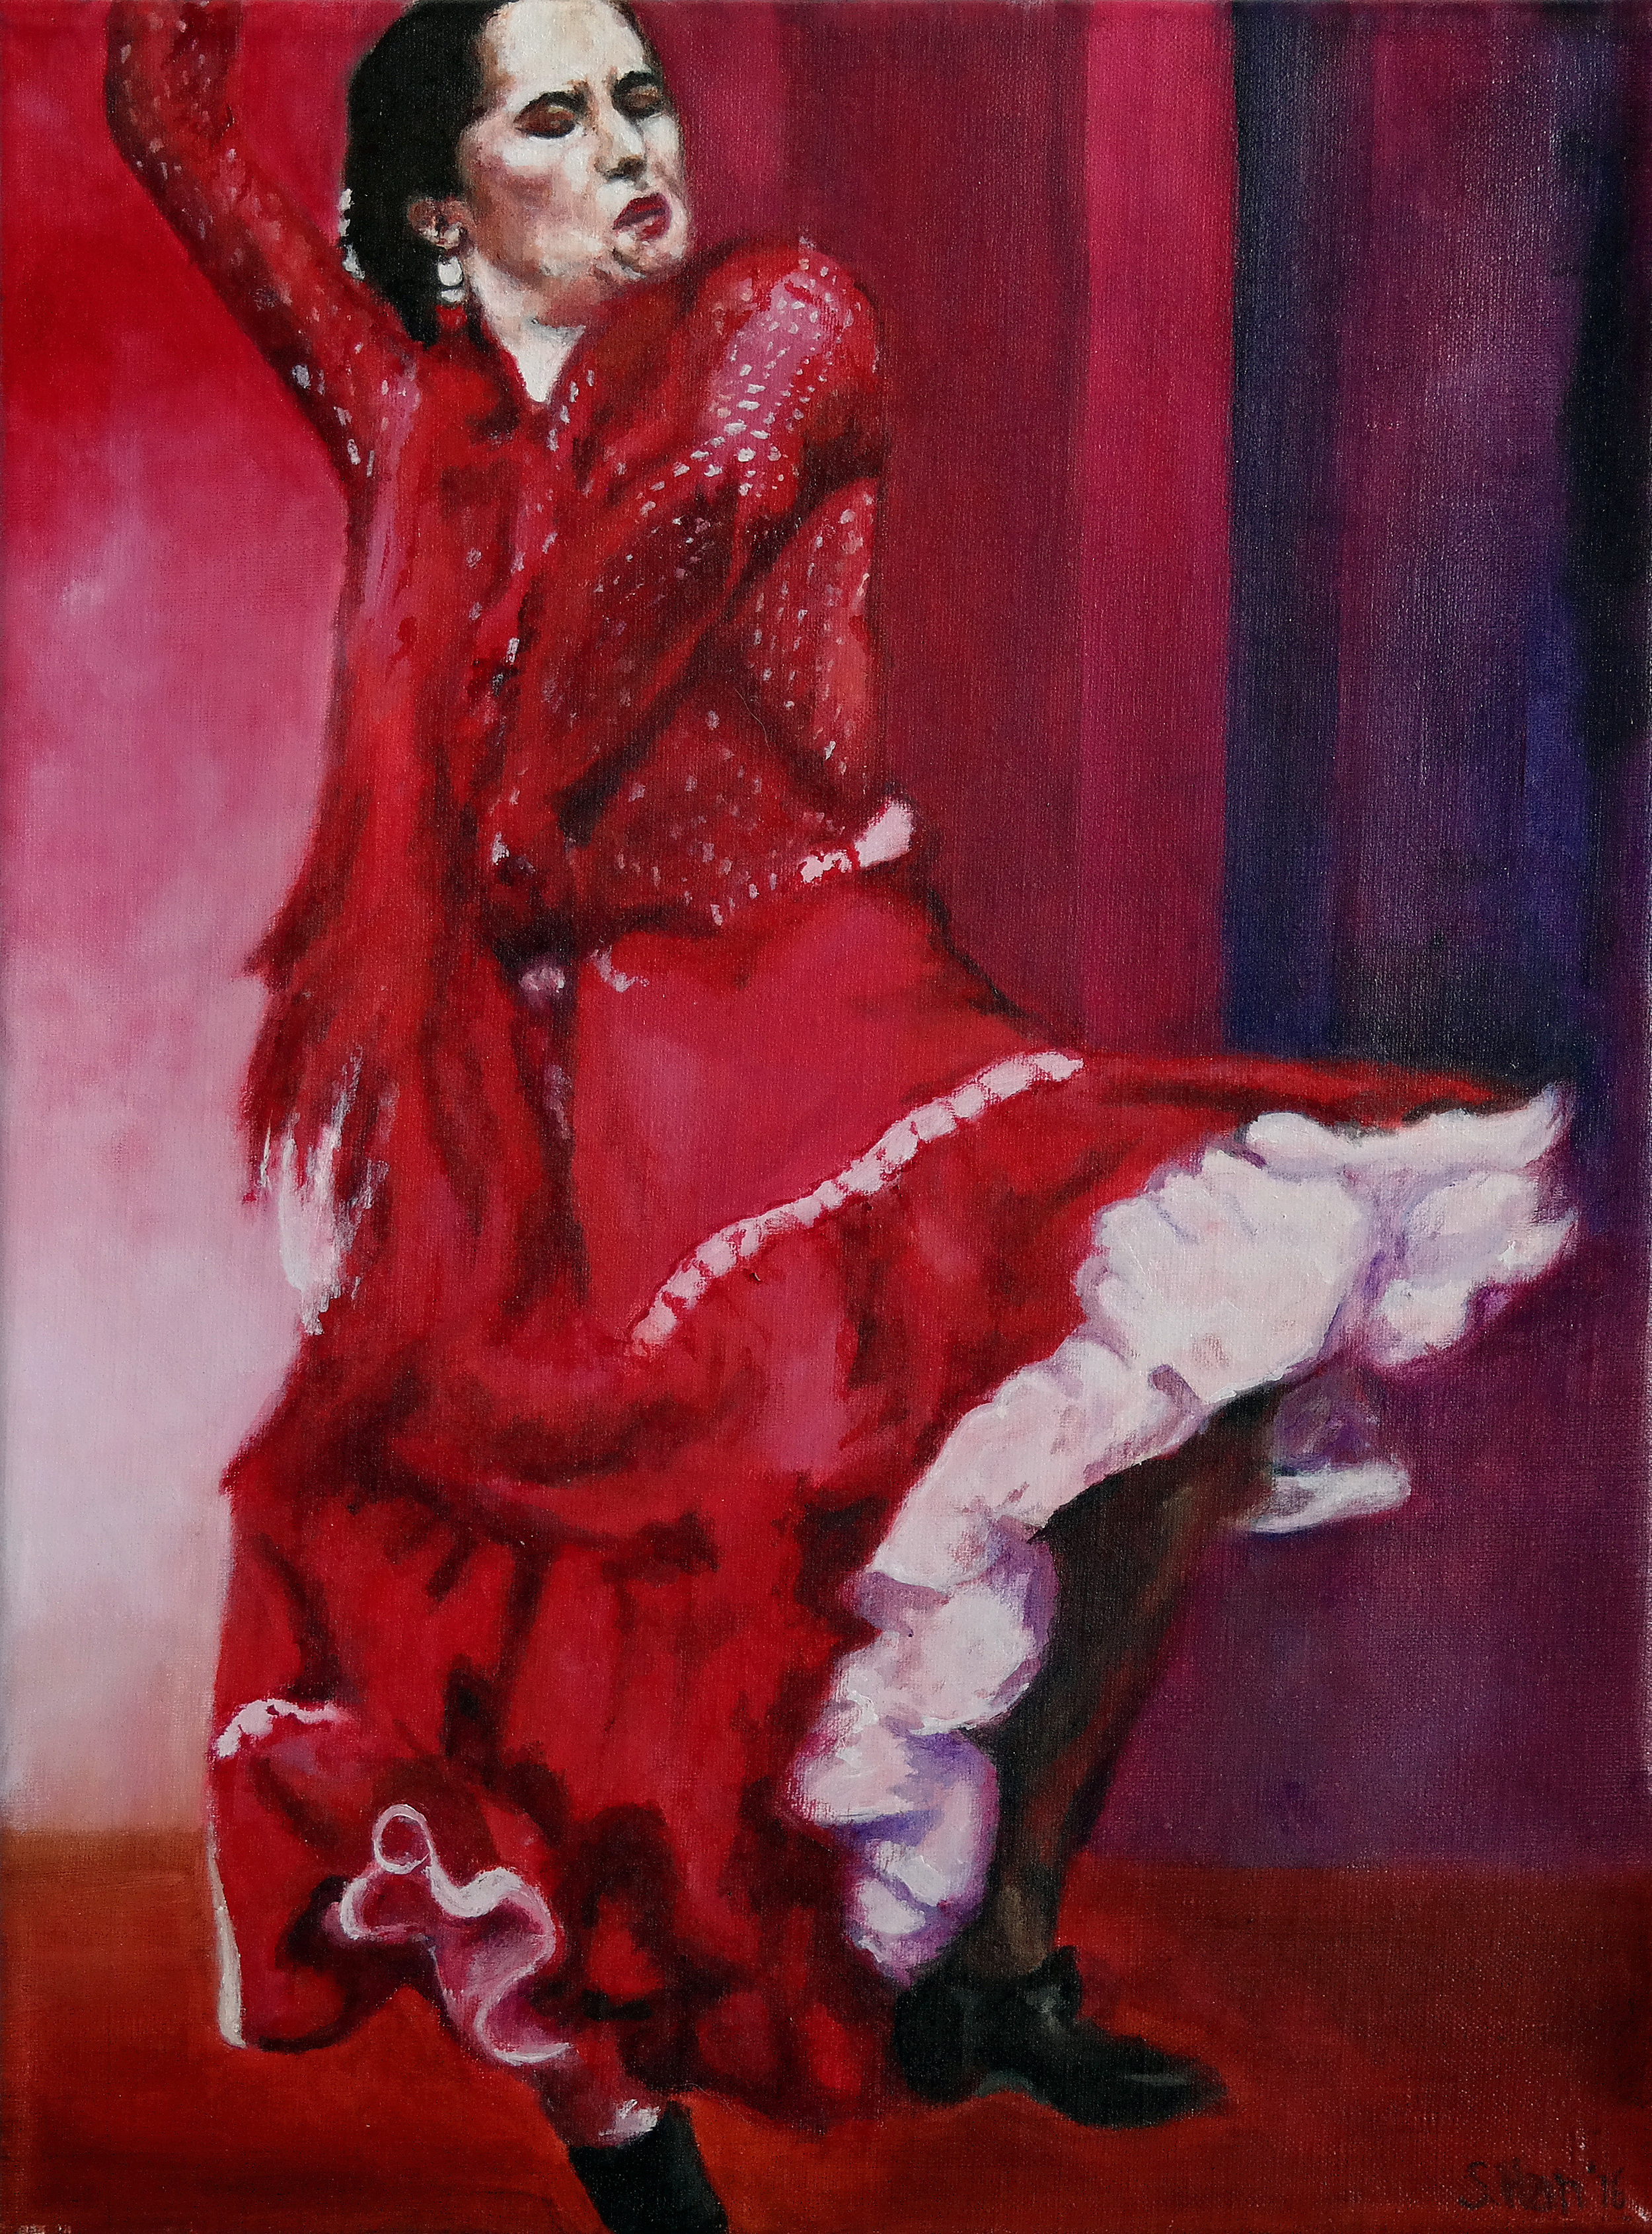 The flamenco dancer